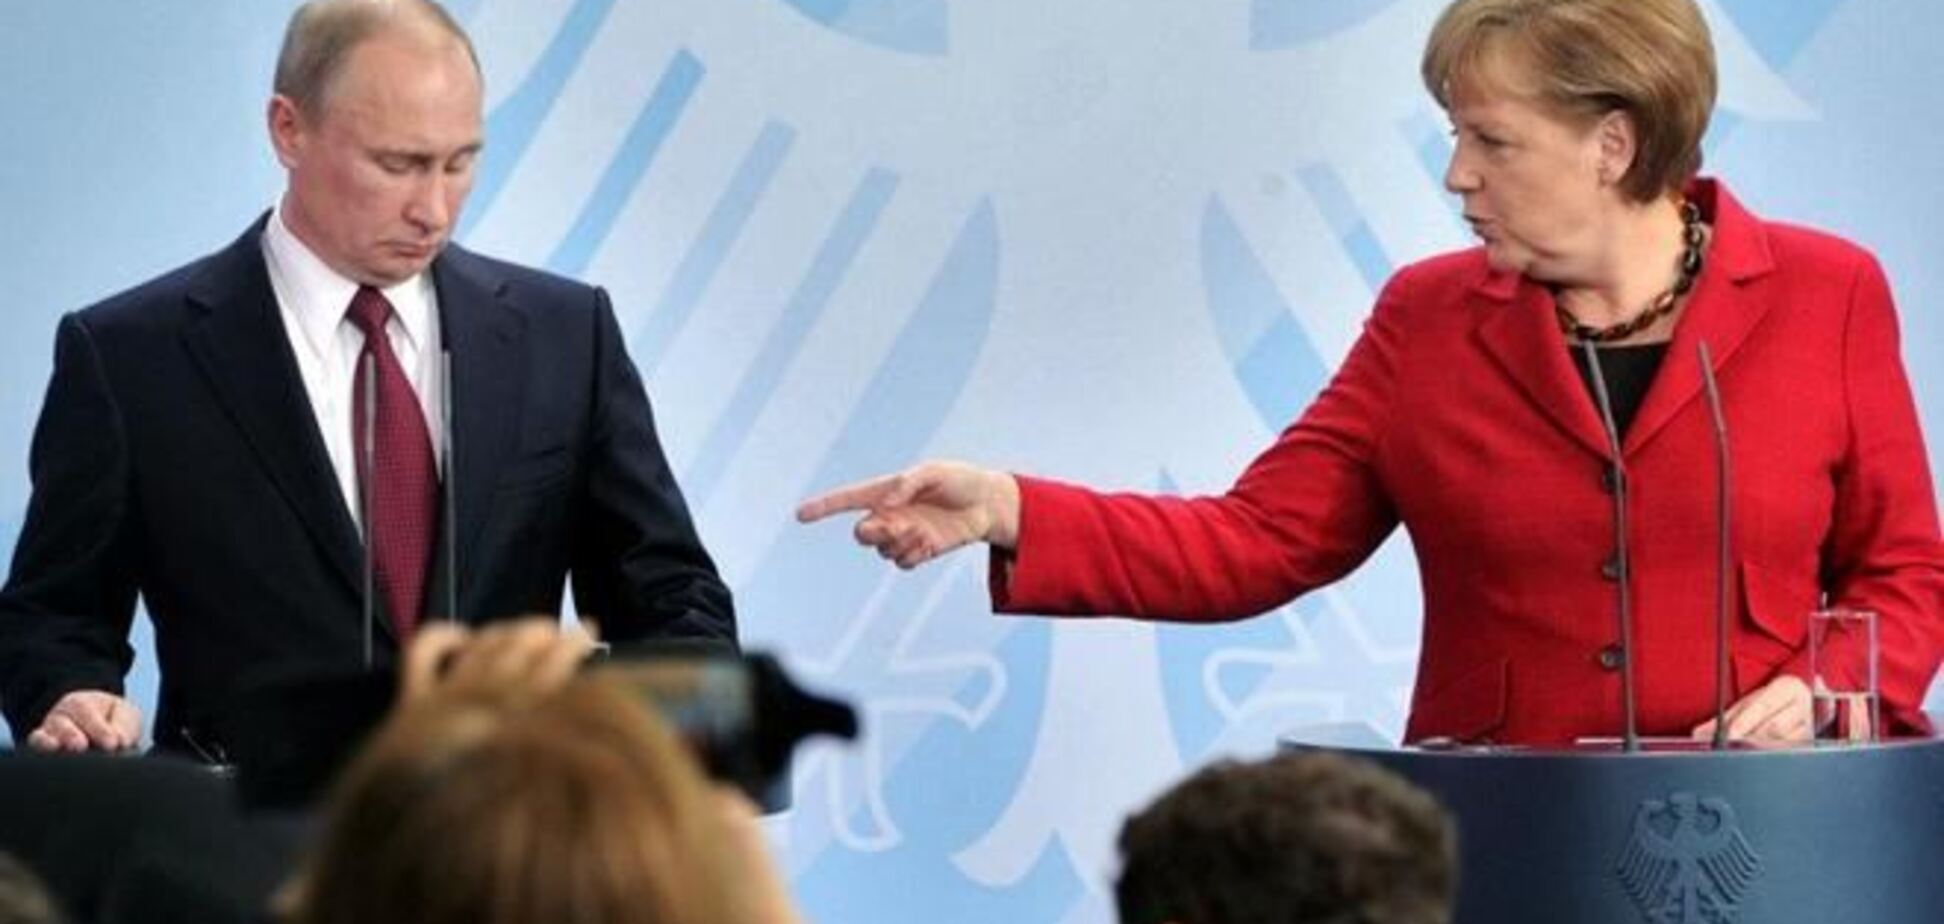 Германия отменила встречу Меркель и Путина из-за событий в Украине